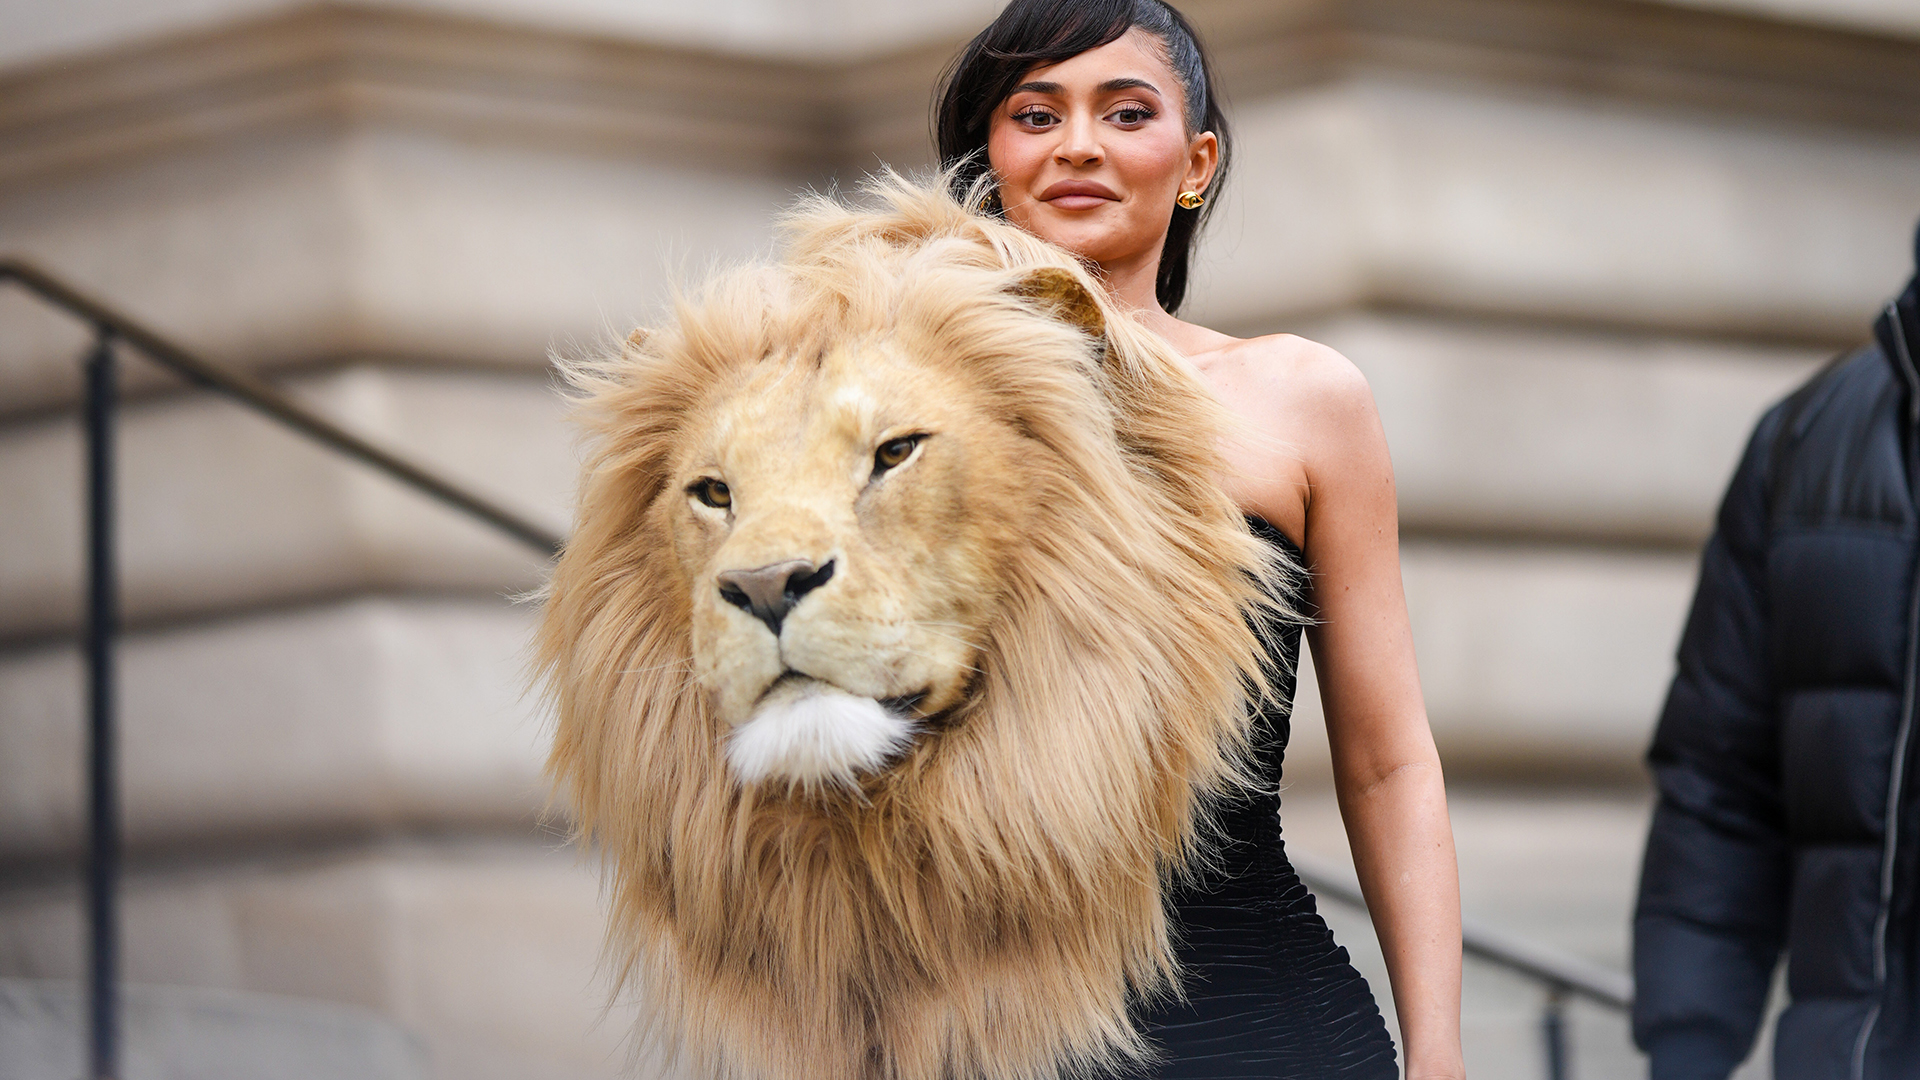 Kylie Jenner, invitada al desfile, acudió con un vestido con cabeza de león (Getty Images)